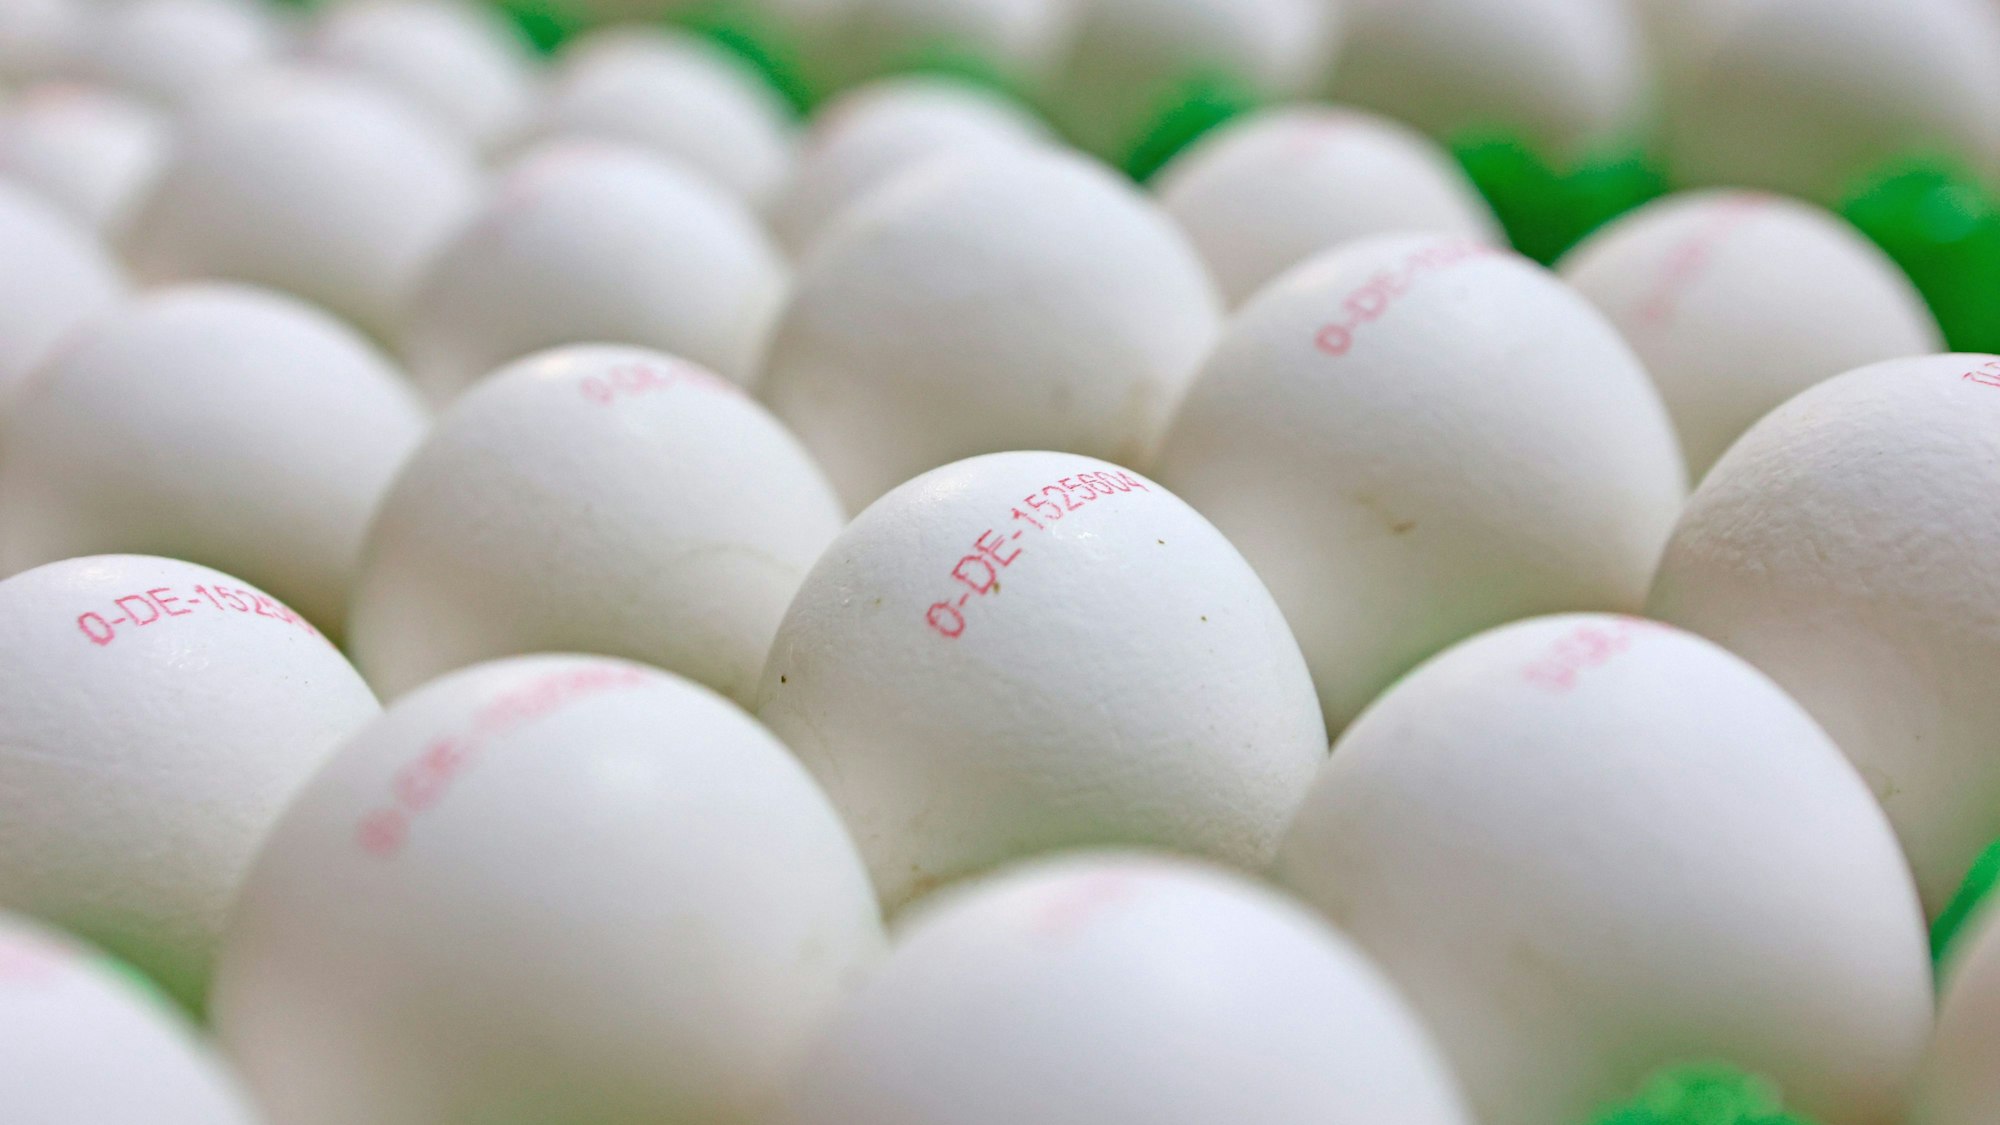 Nur noch ein Ei pro Woche? Die Geflügelbranche übt an dieser neuen Ernährungsempfehlung deutliche Kritik.